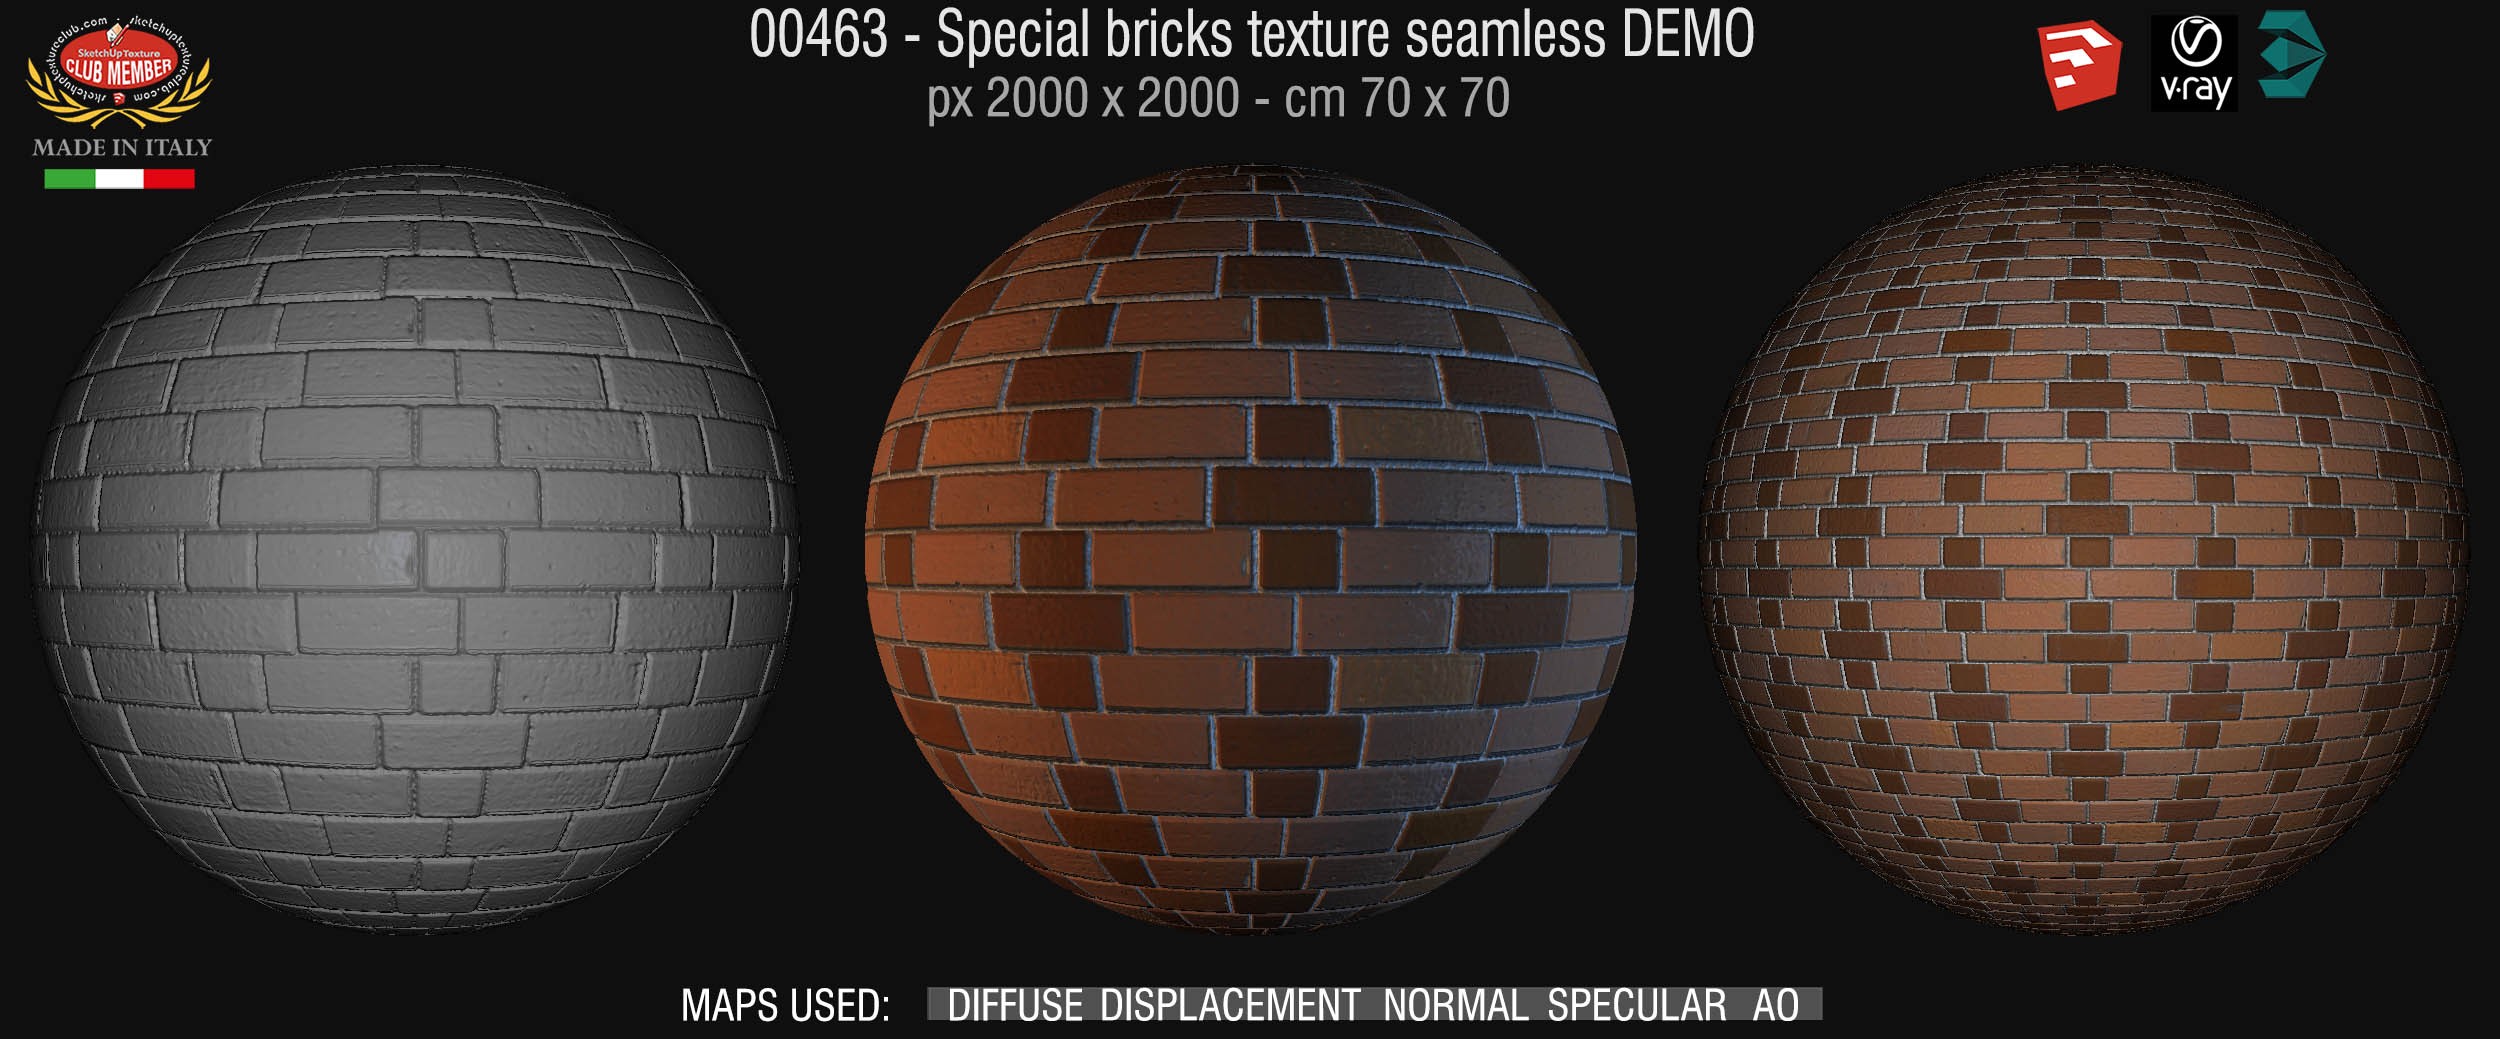 00463 Special bricks texture seamless + maps DEMO